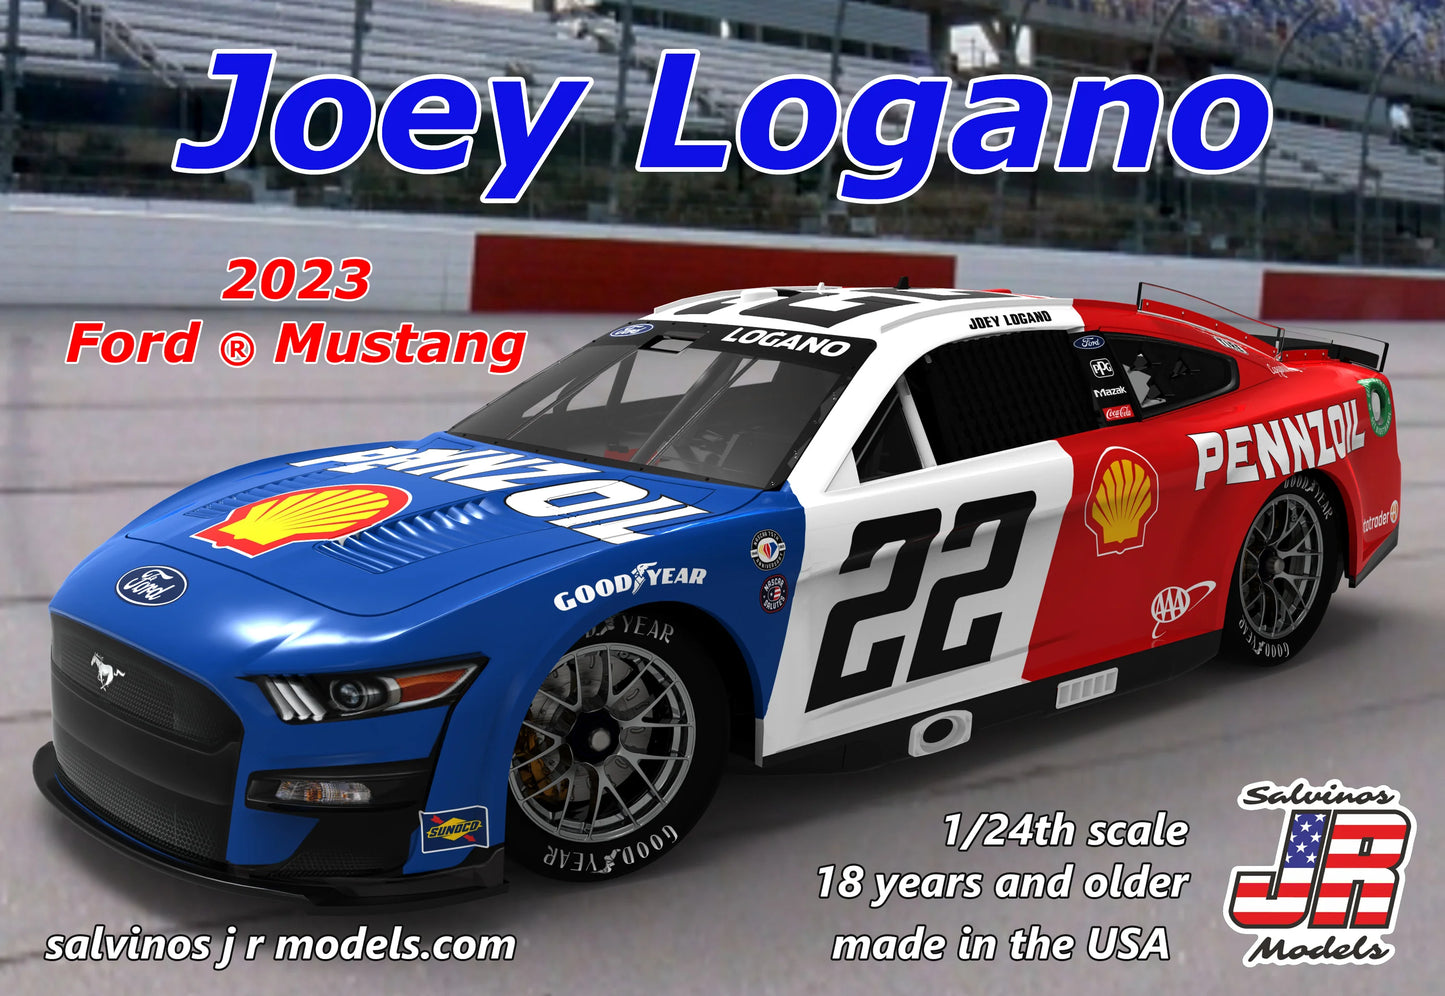 FORD MUSTANG 2023 - JOEY LOGANO - NASCAR 2023